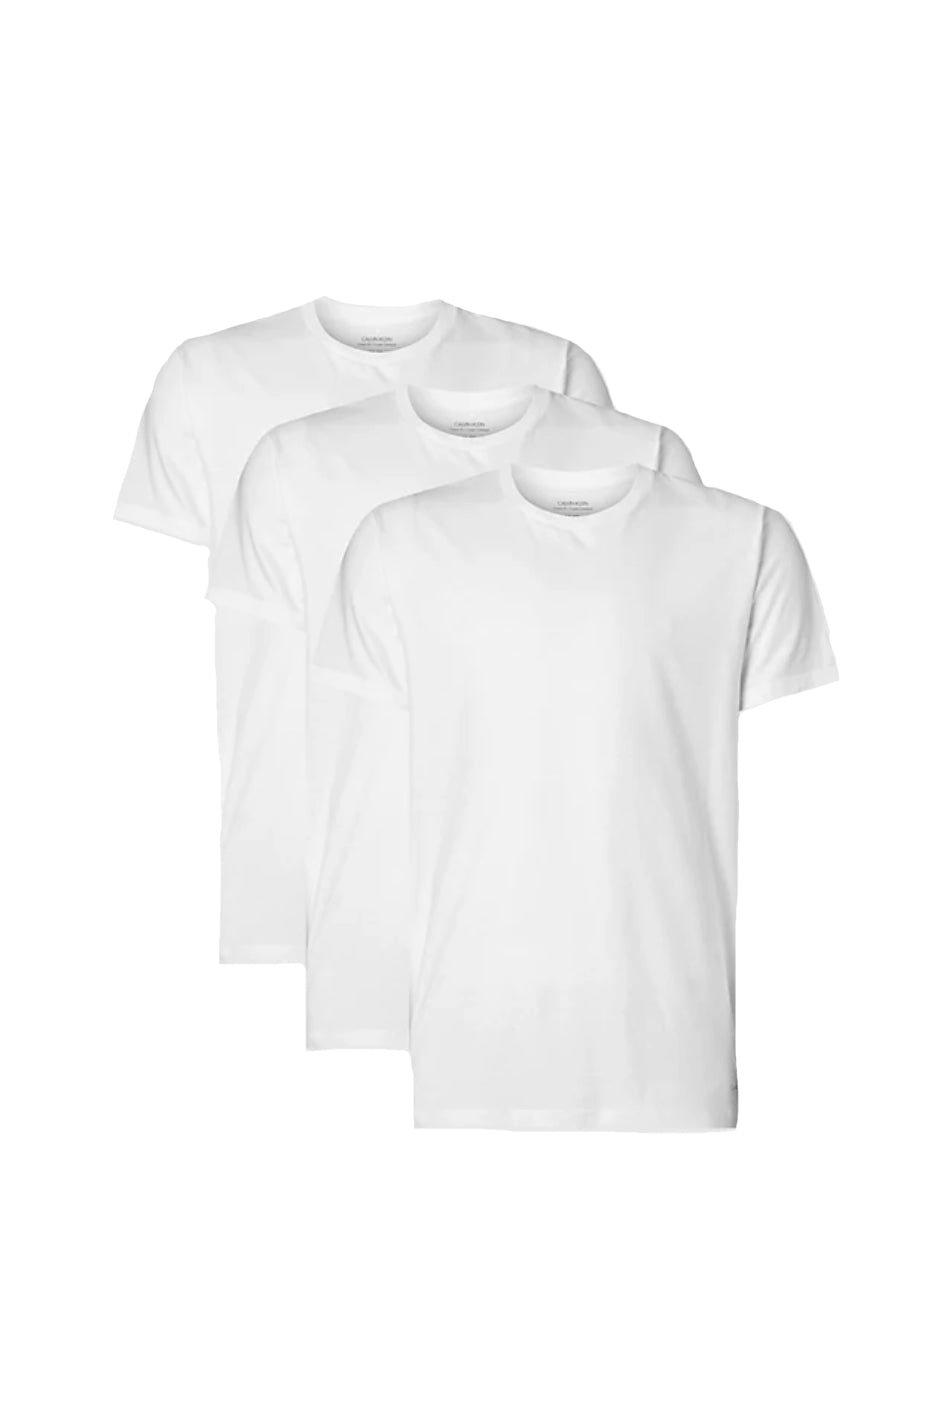 Комплект футболок с круглым вырезом (3 шт.) CALVIN KLEIN, белый